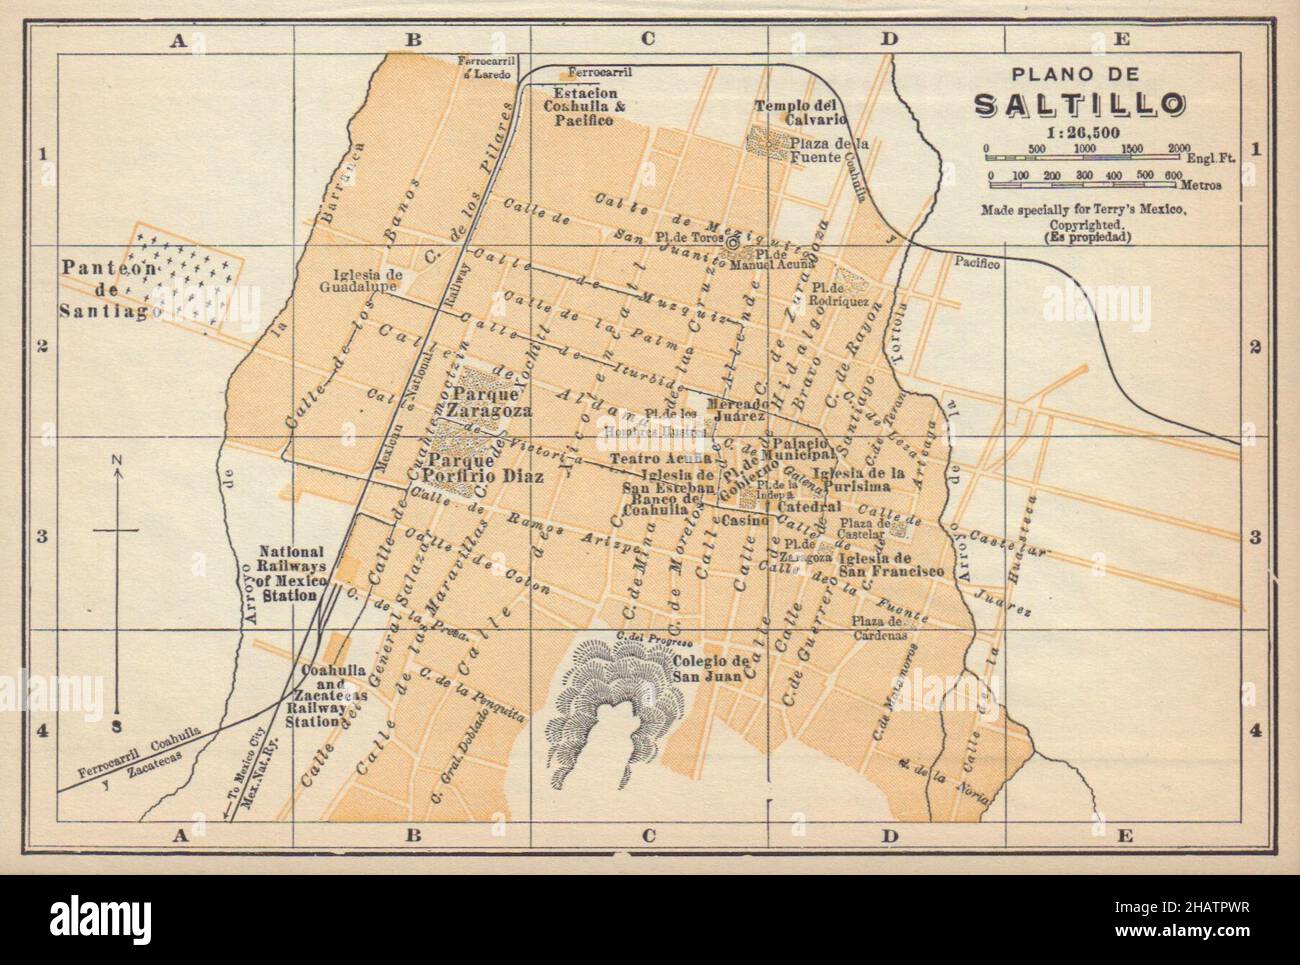 Plano de SALTILLO, Mexico. Mapa de la ciudad. City/town plan 1935 old Stock Photo